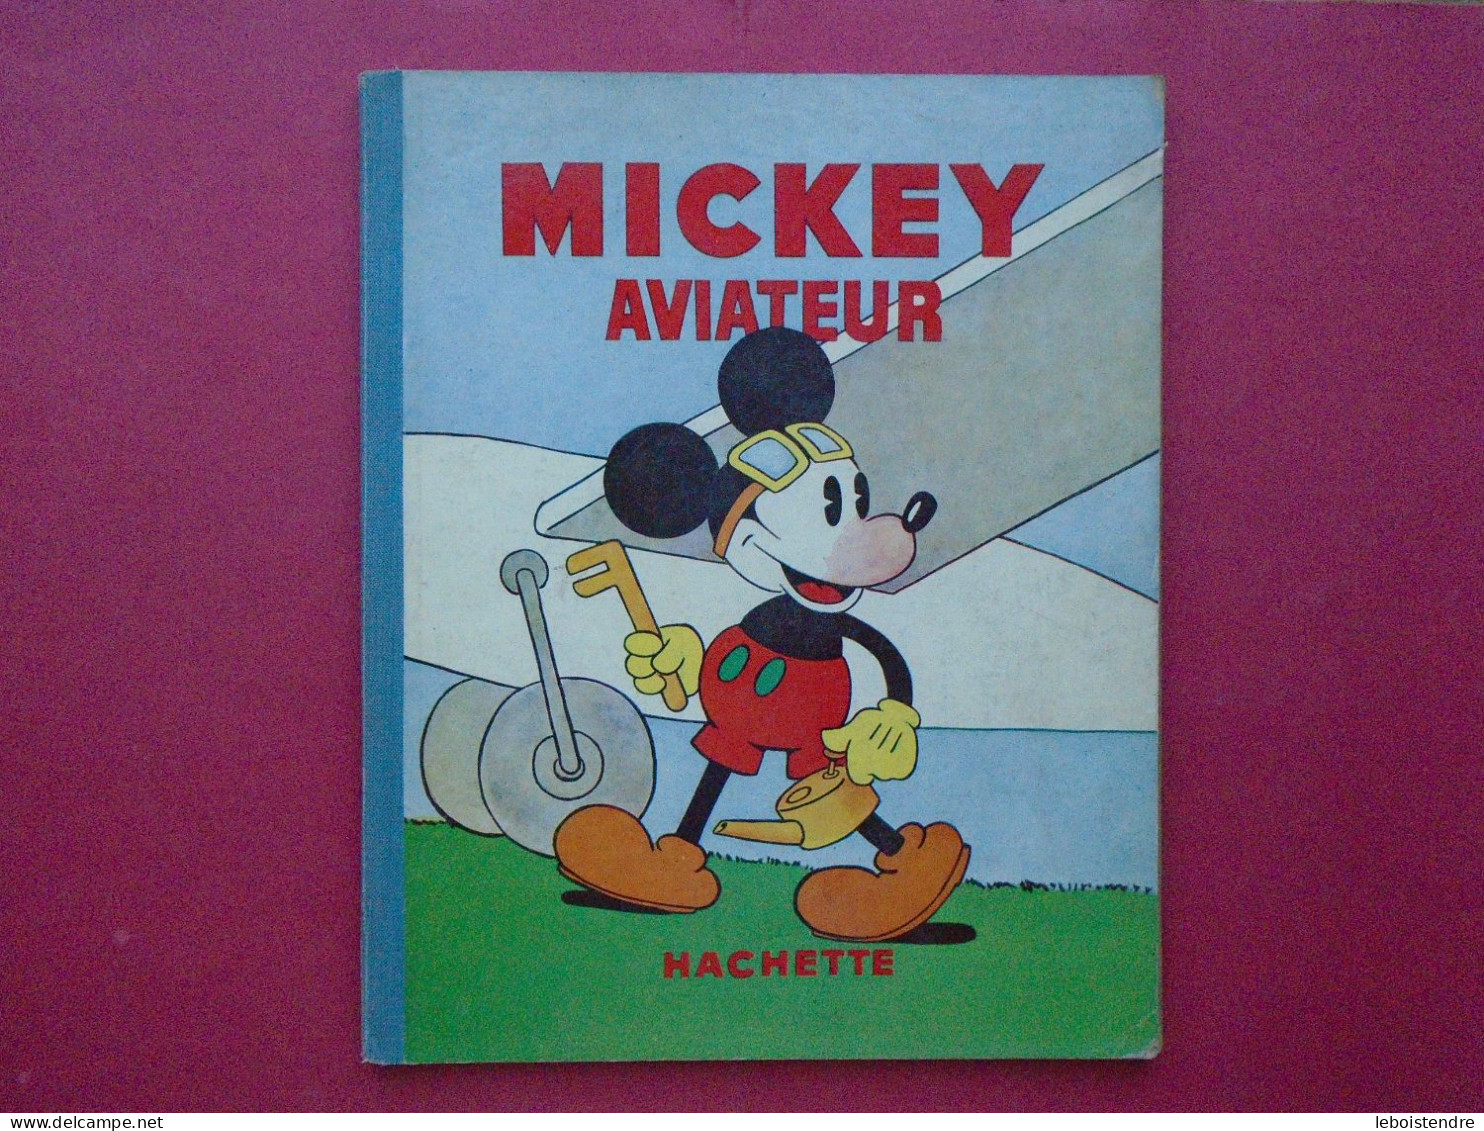 MICKEY AVIATEUR HACHETTE 1936 TRES BON ETAT TRES FRAIS ! ILLUSTRATIONS WALT DISNEY MICKEY N° 8 - Disney